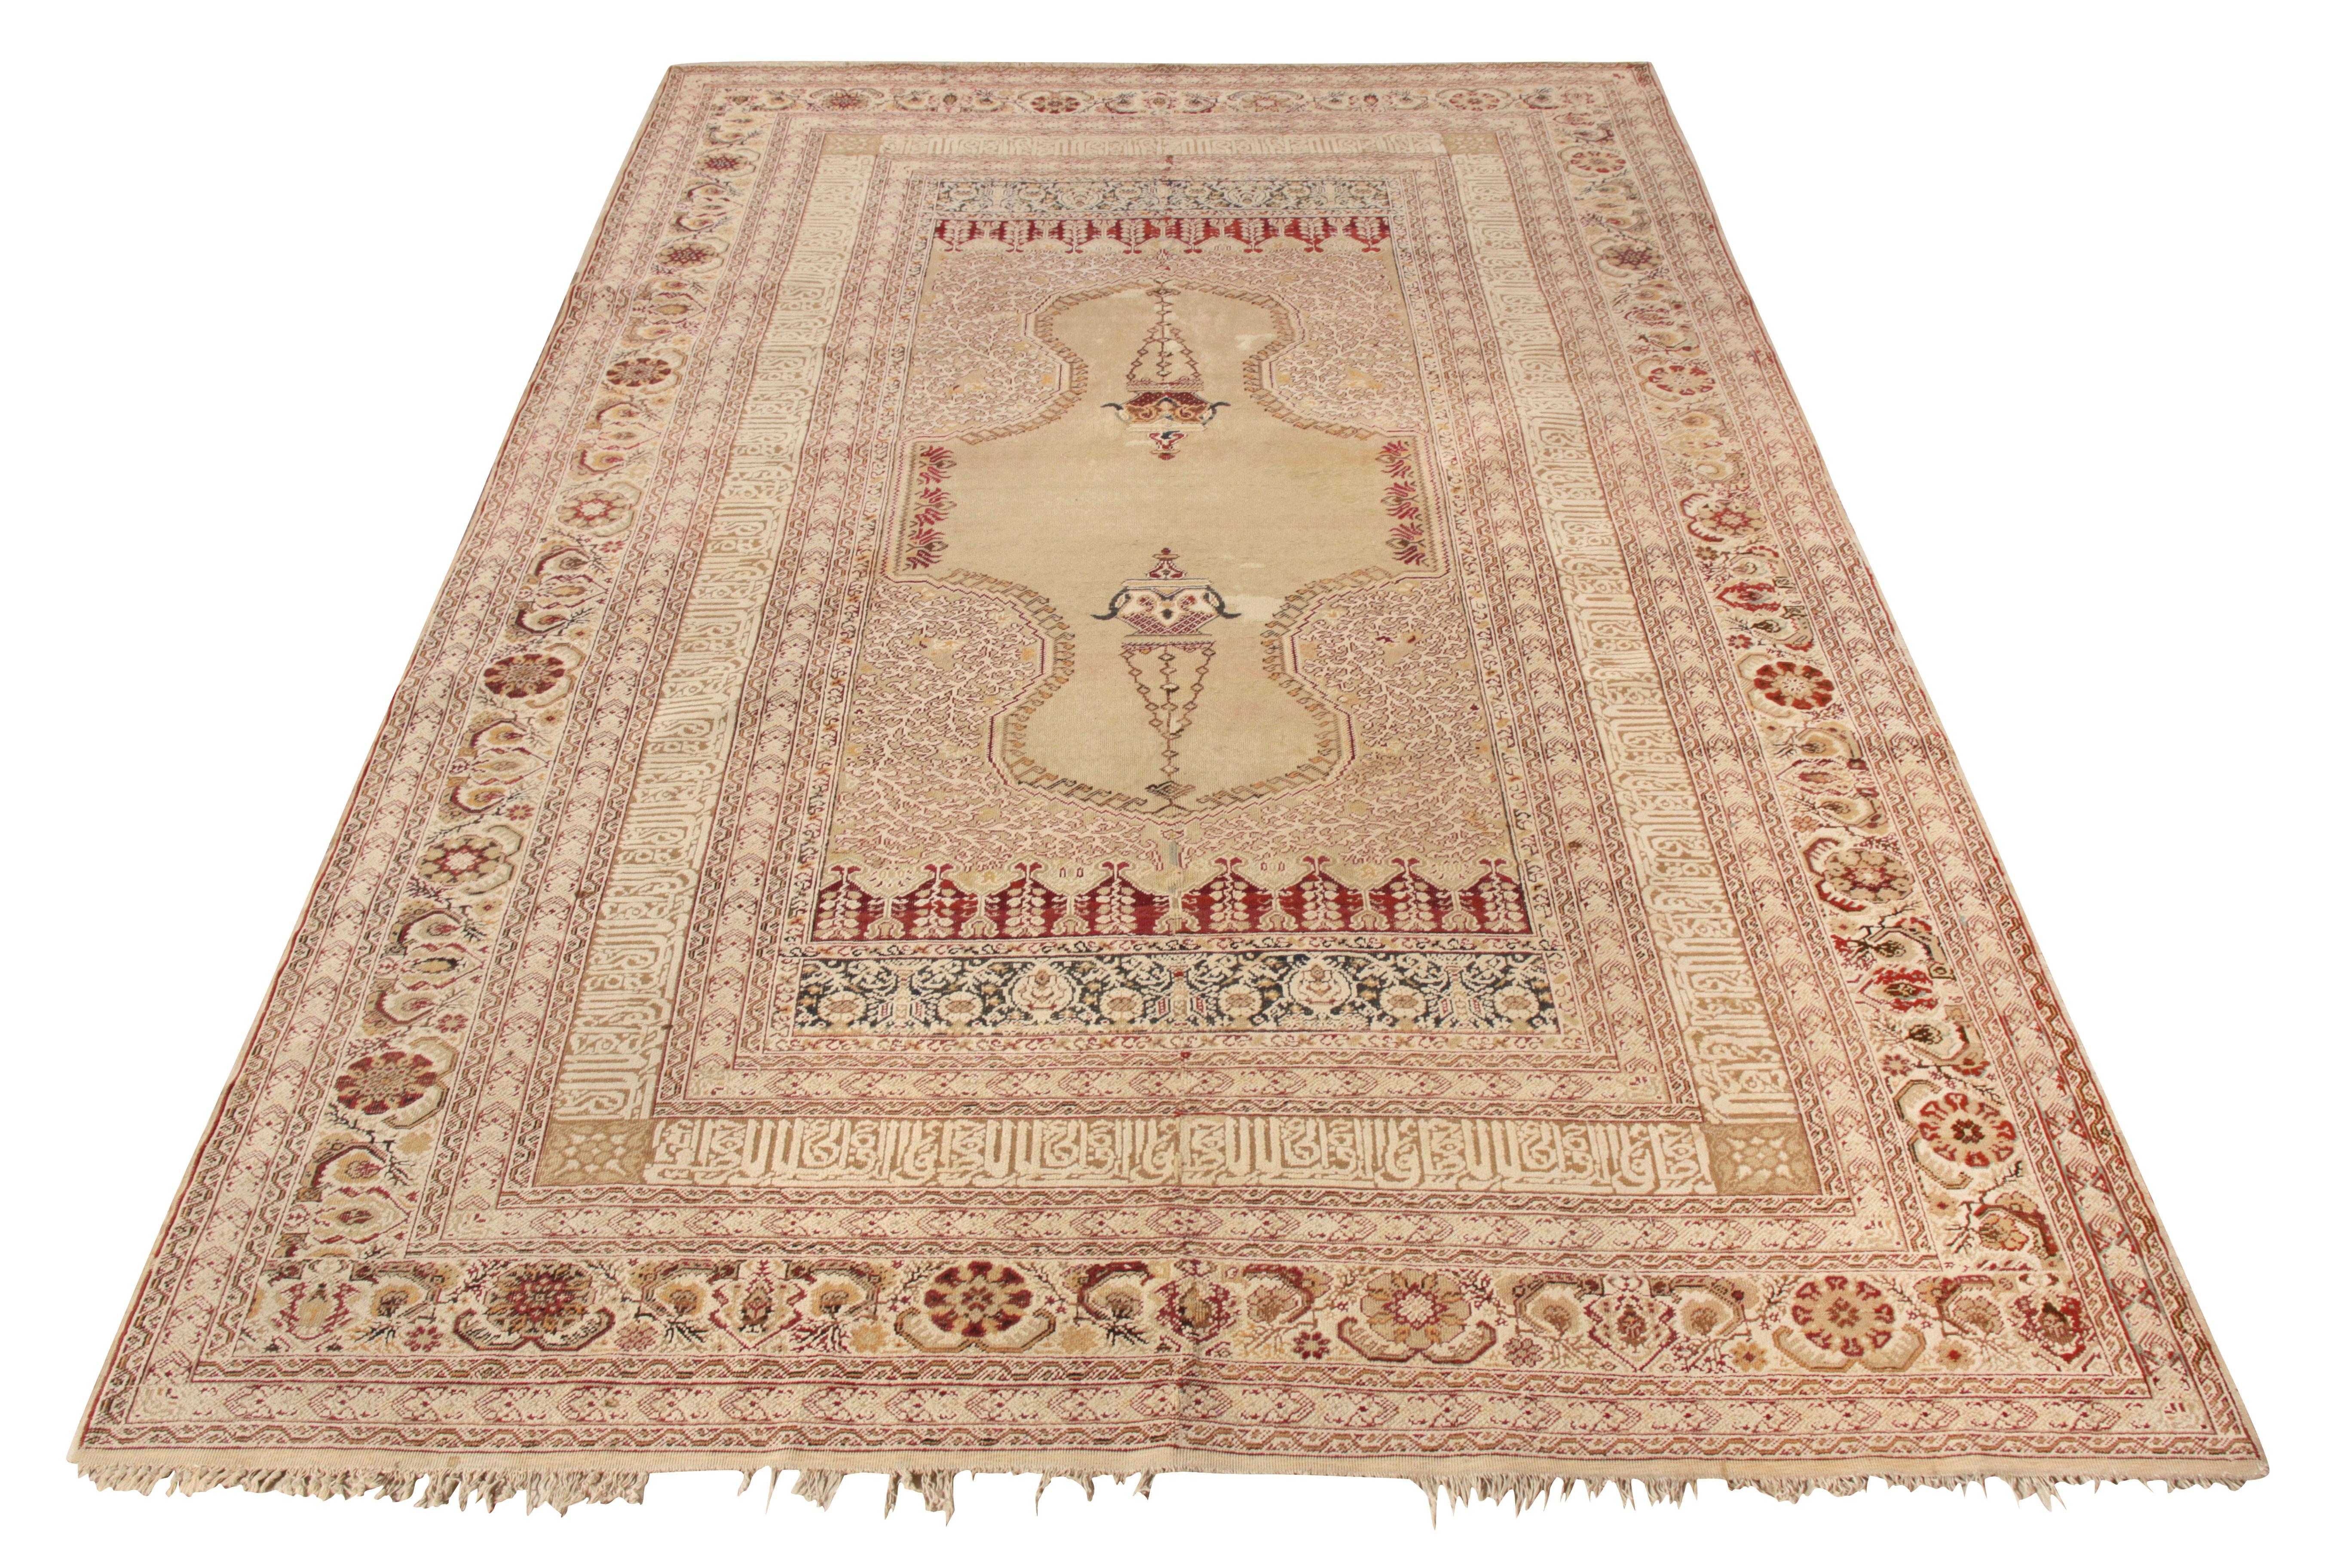 Dieser antike 6x9 Ghiordes-Teppich ist ein handgeknüpftes Wunderwerk aus der Türkei (ca. 1920-1930), das kunstvoll aus einer hochwertigen Woll-Baumwollmischung gefertigt wurde. Mit seiner einzigartigen Komposition zieht der Teppich die